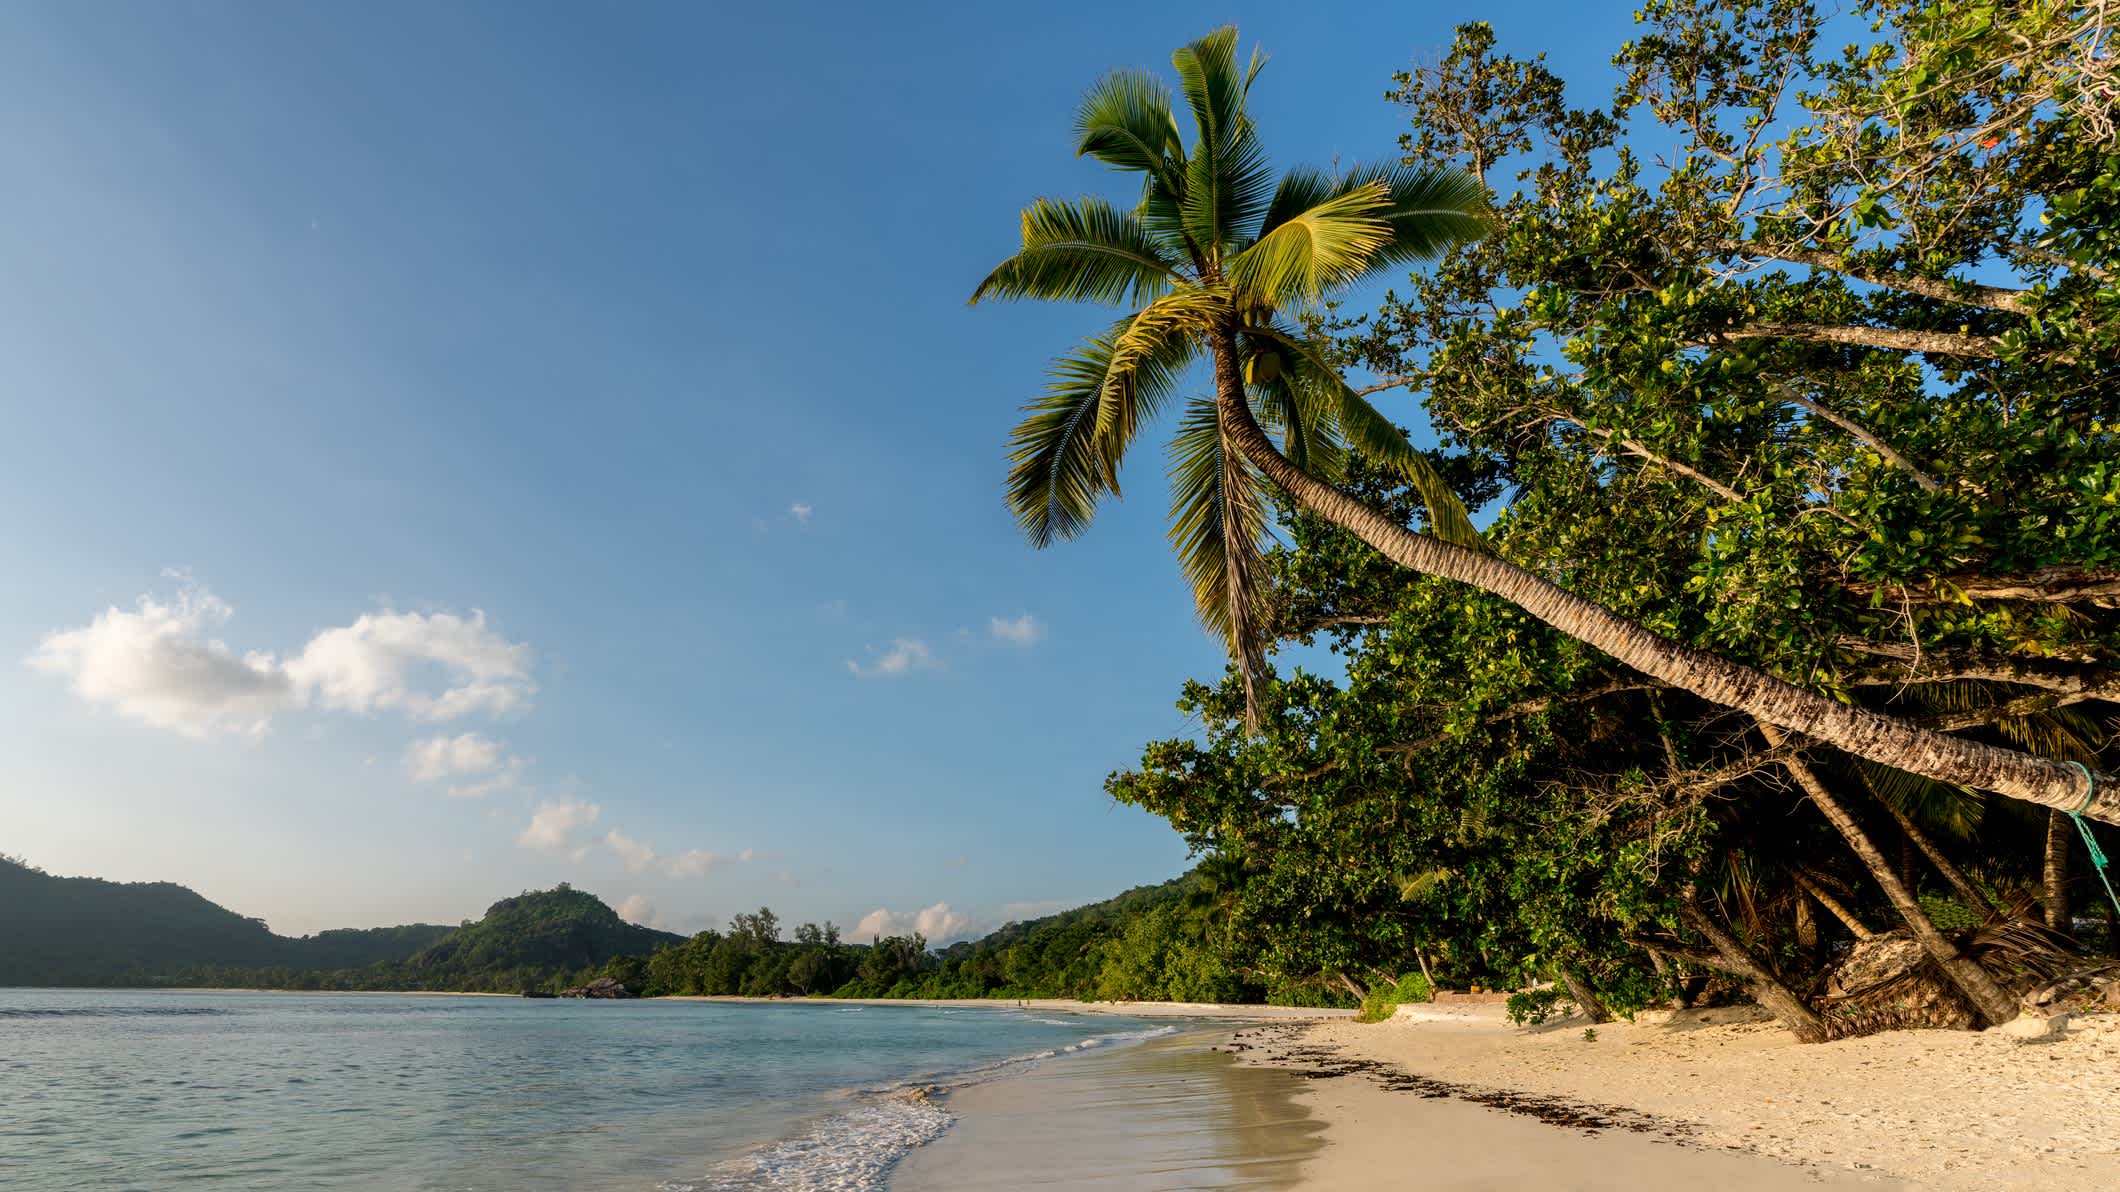 Strand-Aufnahme der Anse Takamaka auf Mahé Island, Seychellen bei makellosem Sonnenschein und mit einer sich zum Wasser neigenden Palme sowie wilder Vegetation und ruhigem Meer.